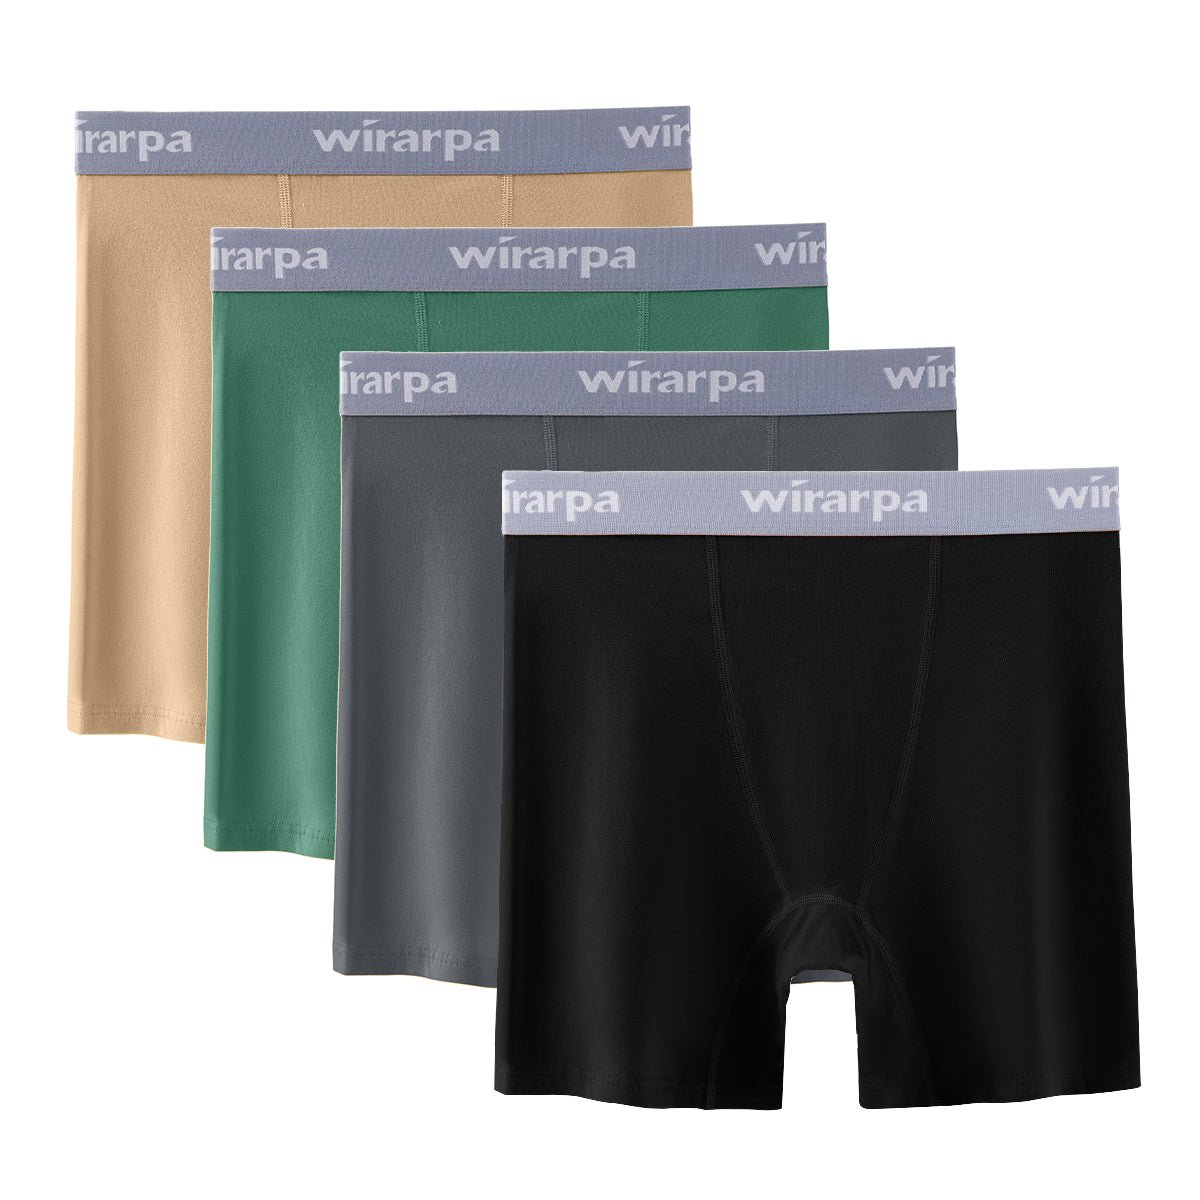 wirarpa Women's Boxer Briefs Underwear Anti Chafing Boy Shorts